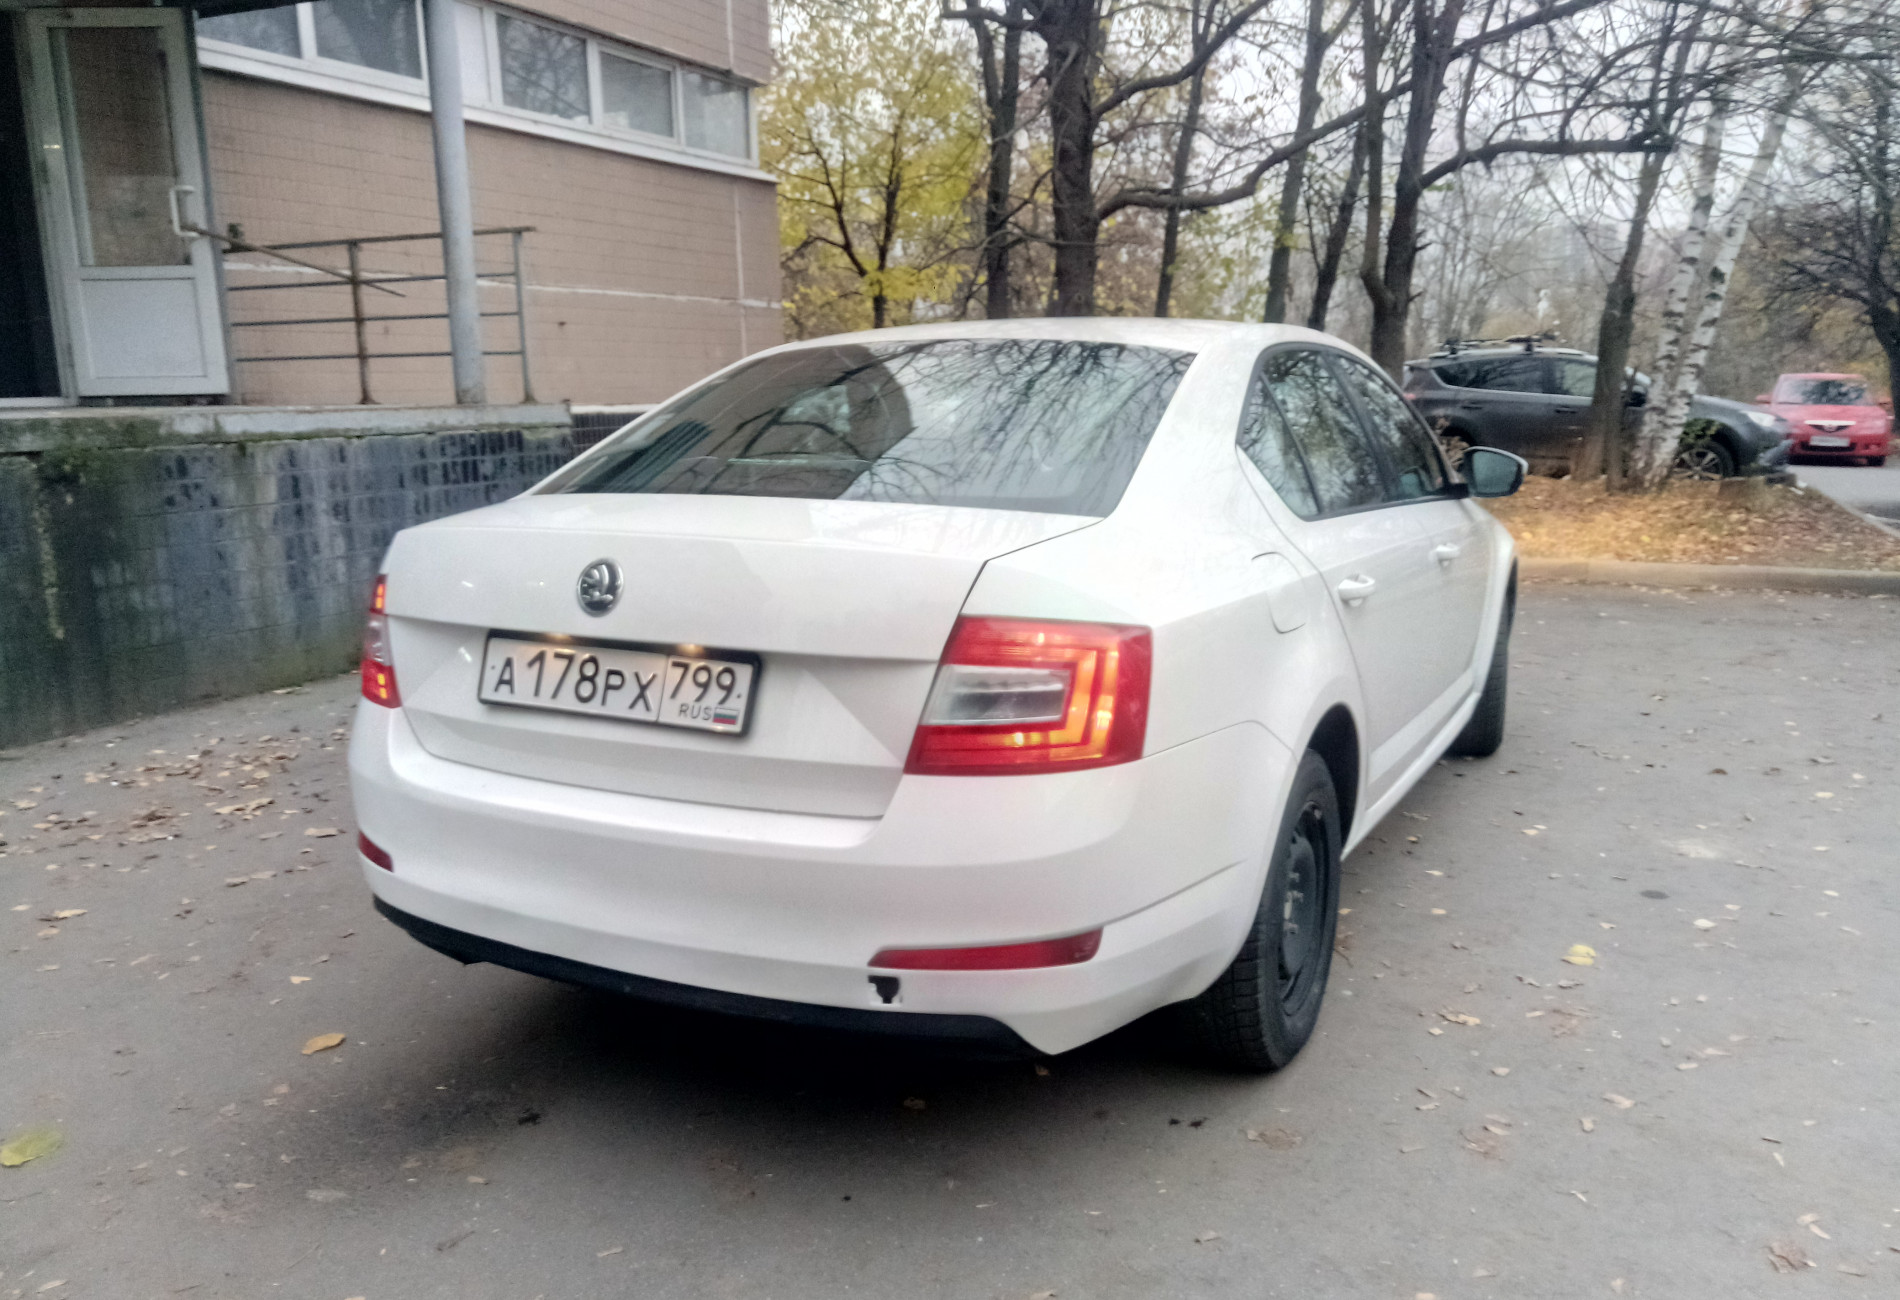 Аренда skoda octavia эконом класса 2015 года в городе Москва Ясенево от 1290 руб./сутки, передний привод, двигатель: бензин, объем 1.6 литров, ОСАГО (Мультидрайв), без водителя, недорого, вид 2 - RentRide